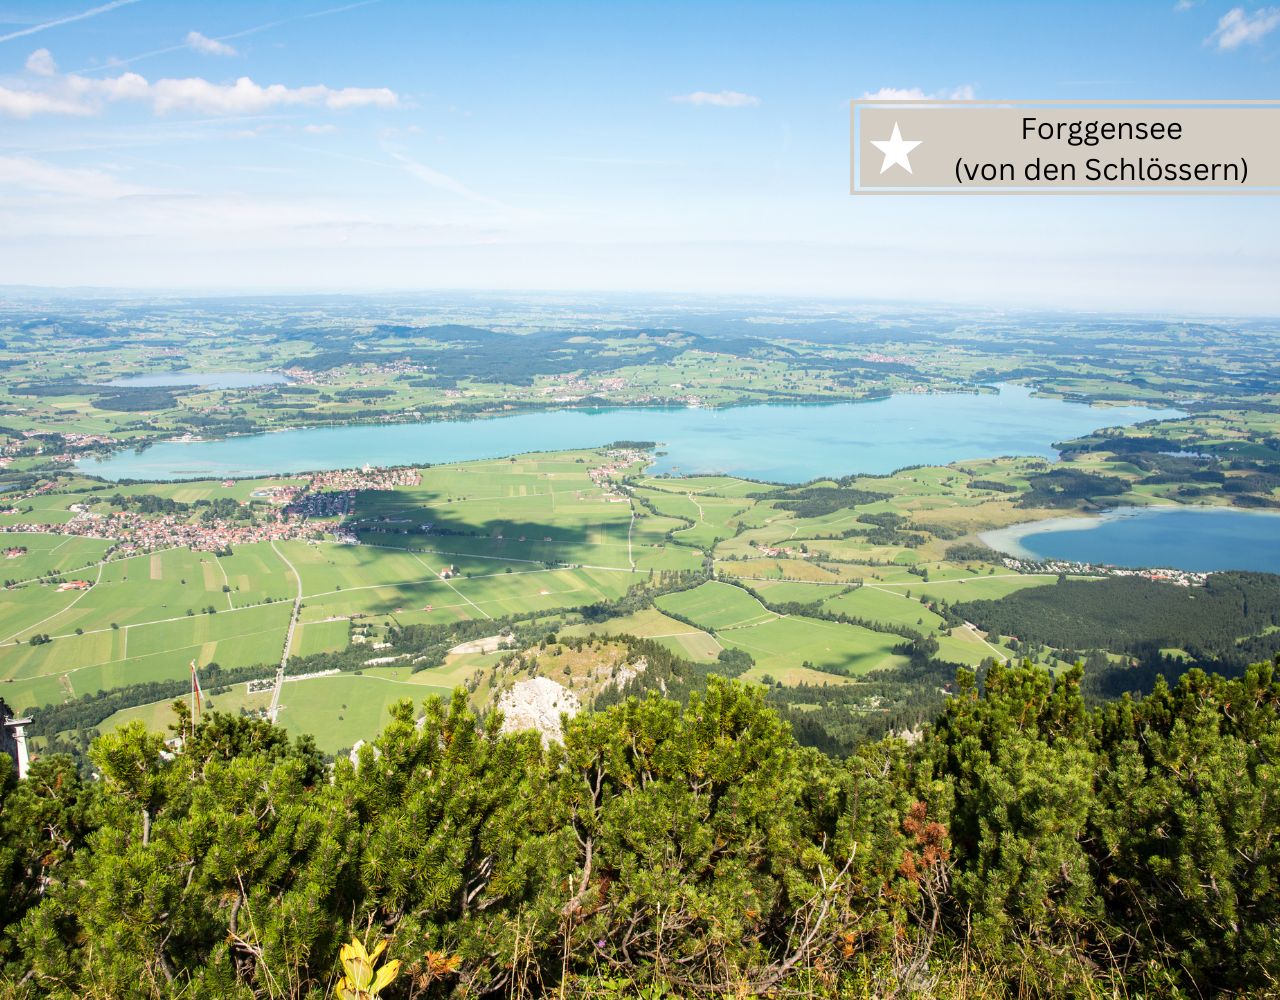 Schöne Bayerische Bergseen - Forggensee im Allgäu